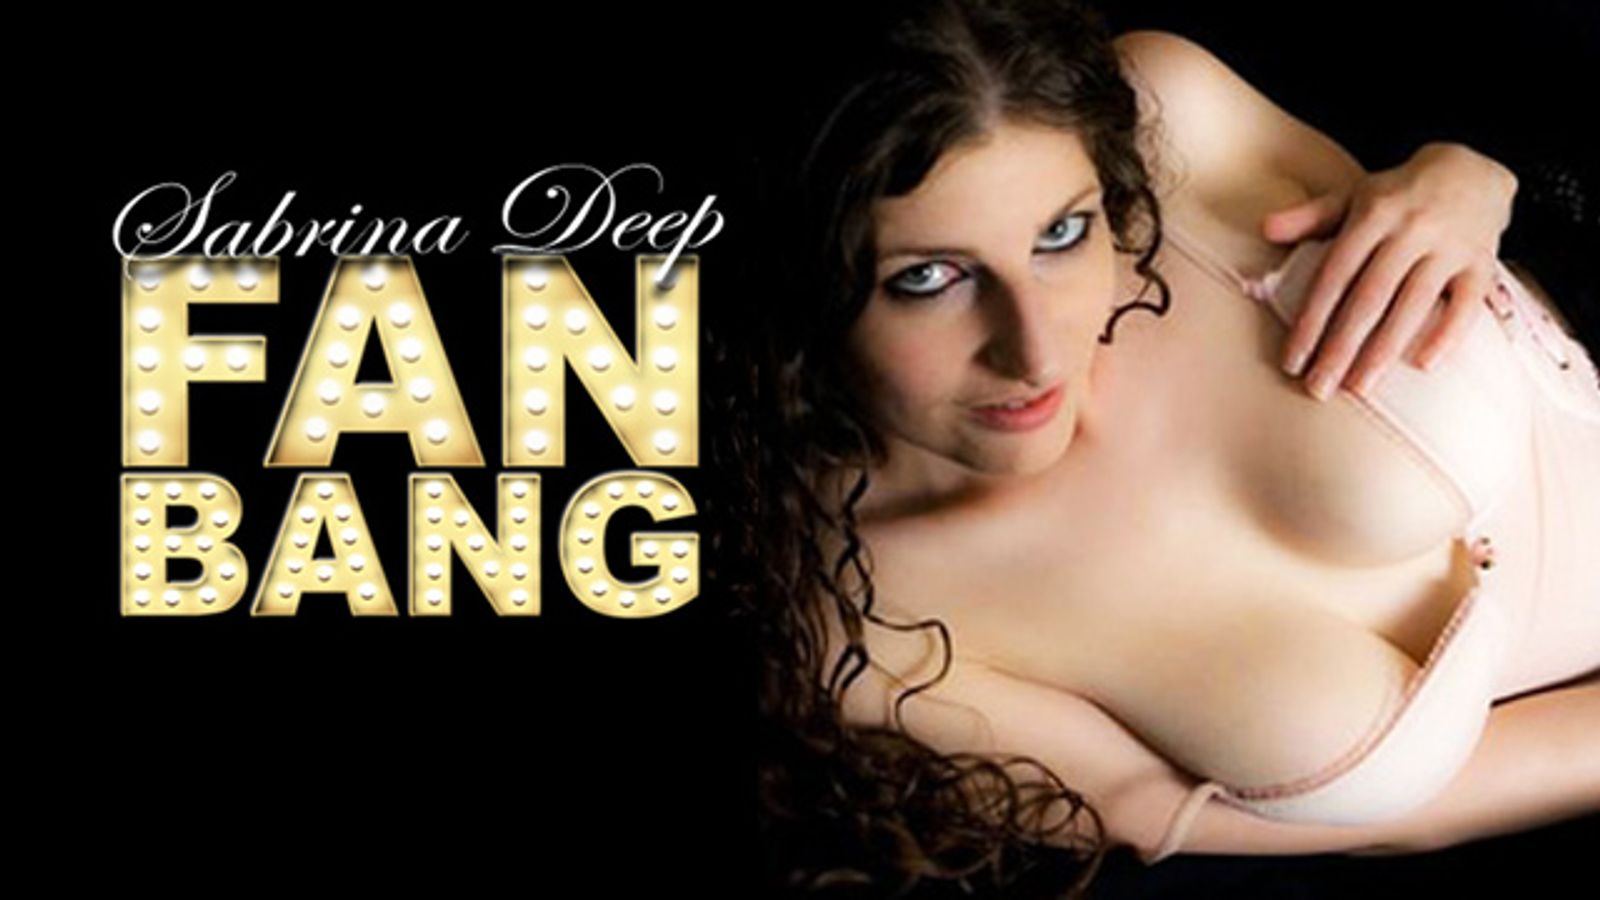 Metro Media to Produce DVD of Sabrina Deep ‘Fan Bang’